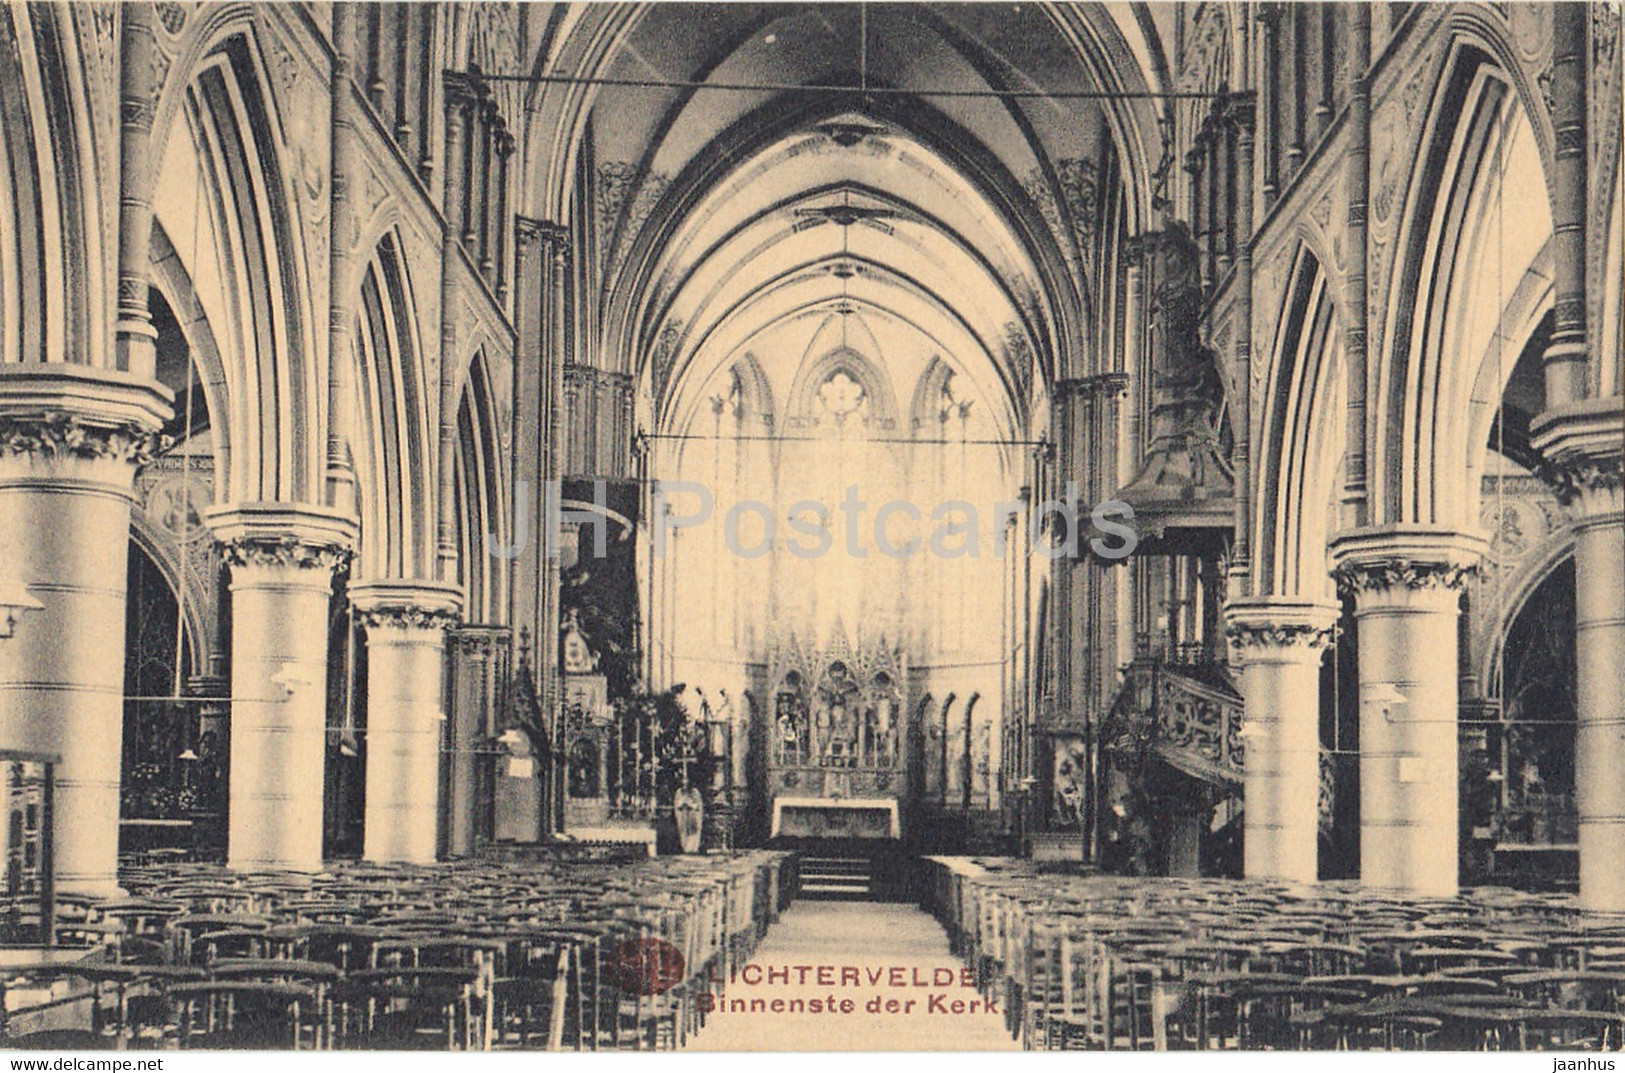 Lichtervelde - Binnenste Der Kerk - Church - Old Postcard - 1917 - Belgium - Used - Lichtervelde